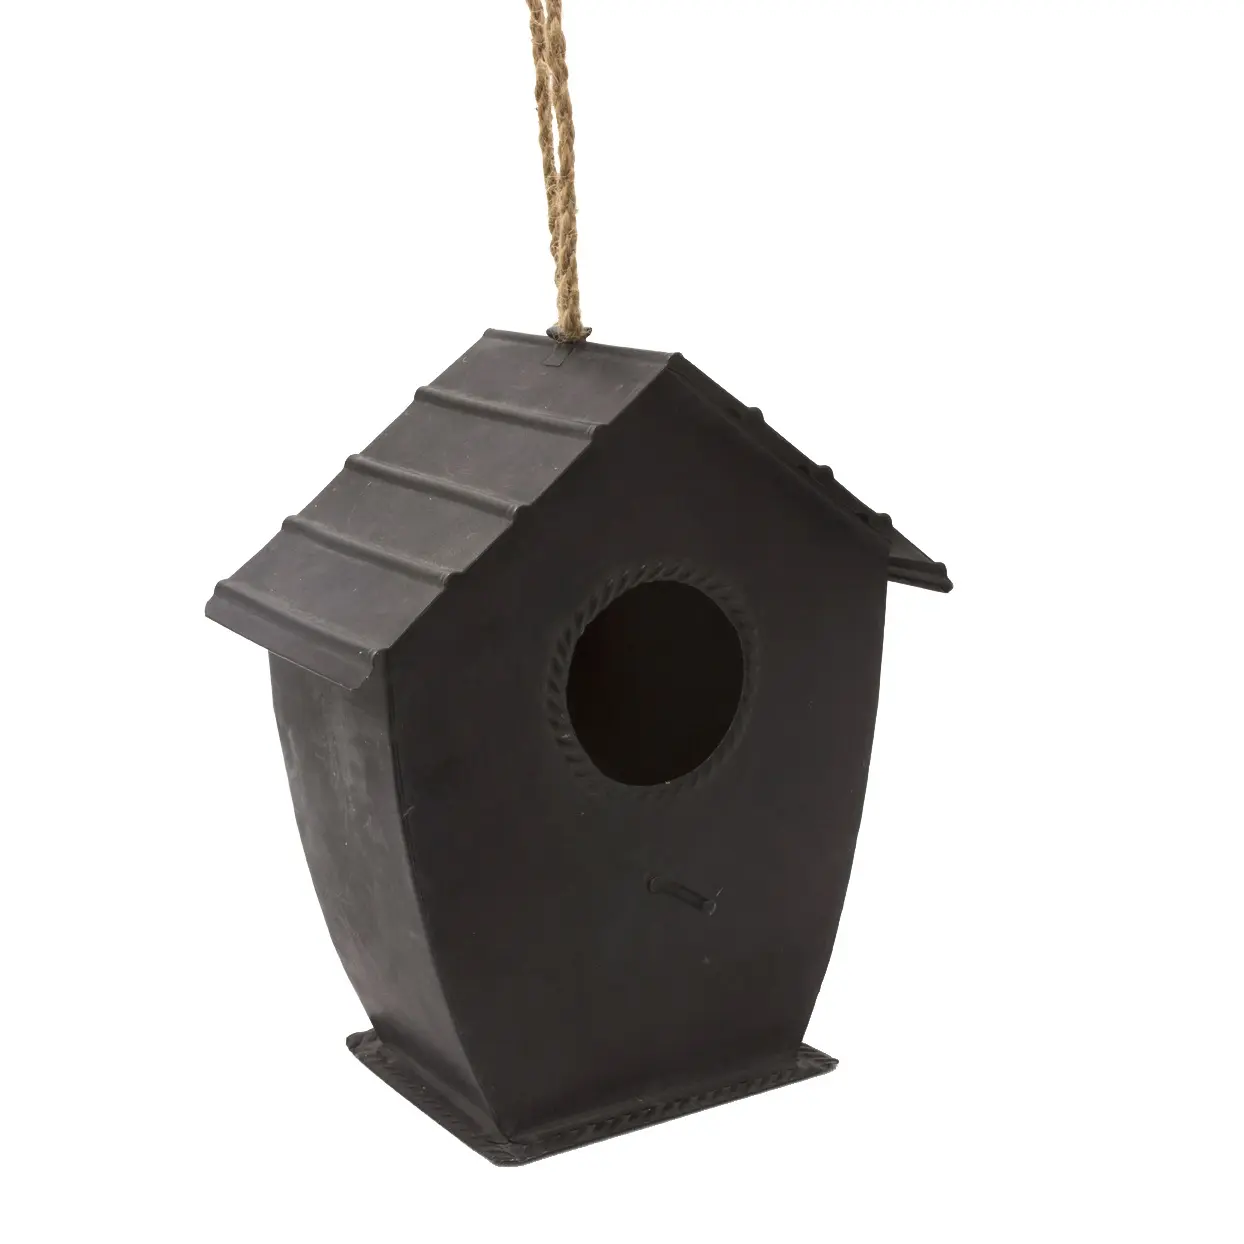 Noir moderne Vintage oiseau maison de famille galvanisé étain métal poudre enduit oiseau maison Art indien jardin Art pieu prix de gros